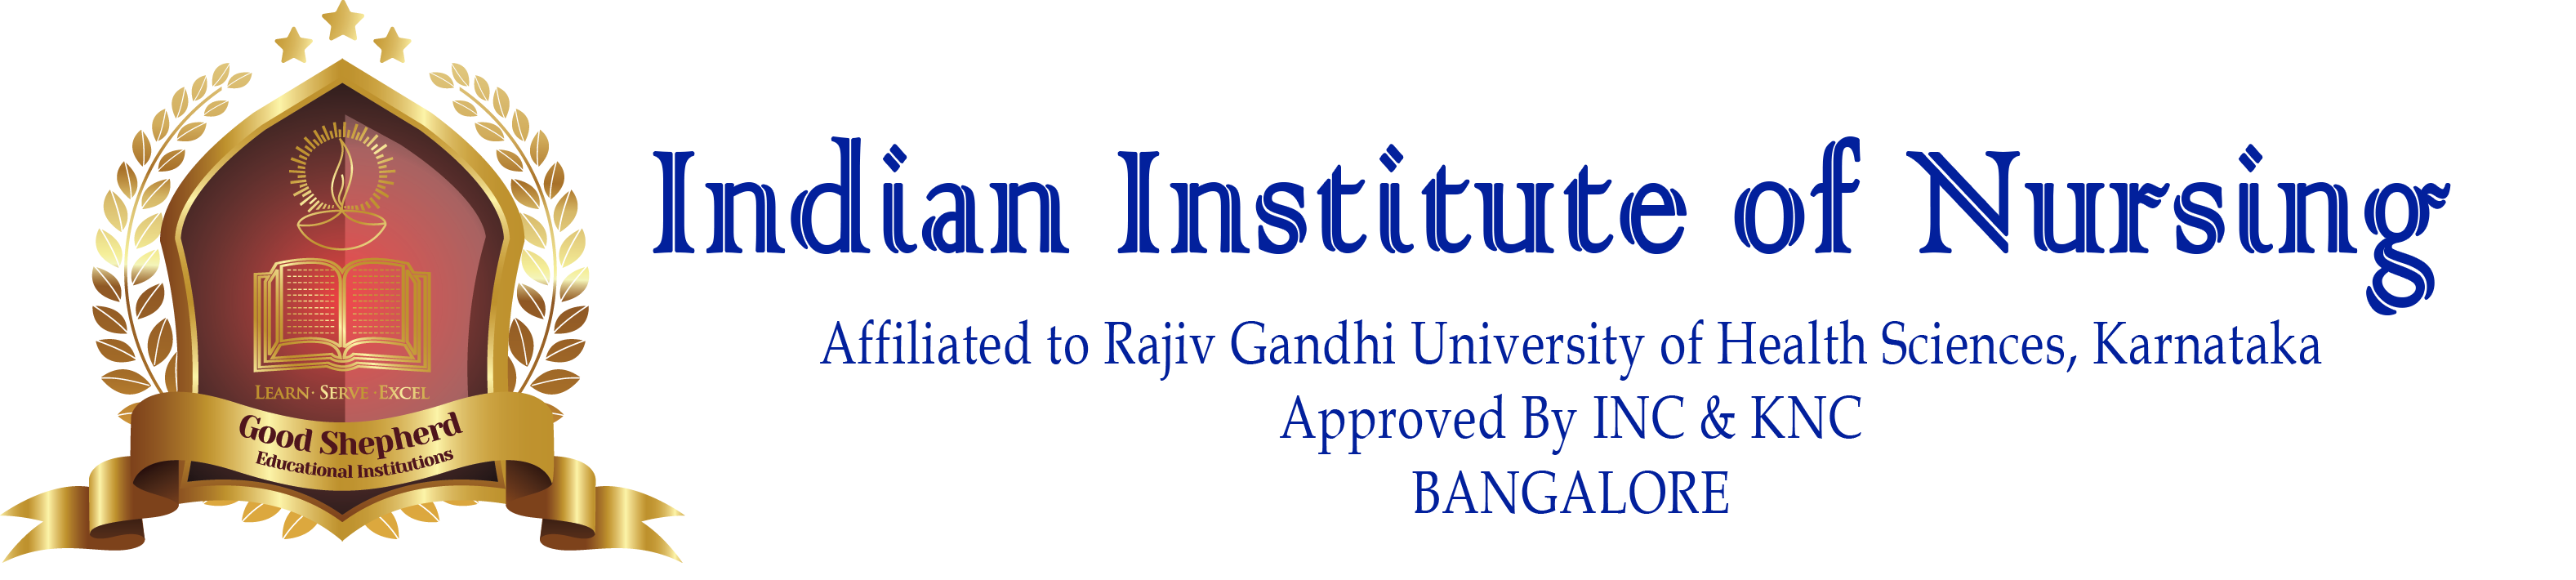 Indian Institute Of Nursing Logo